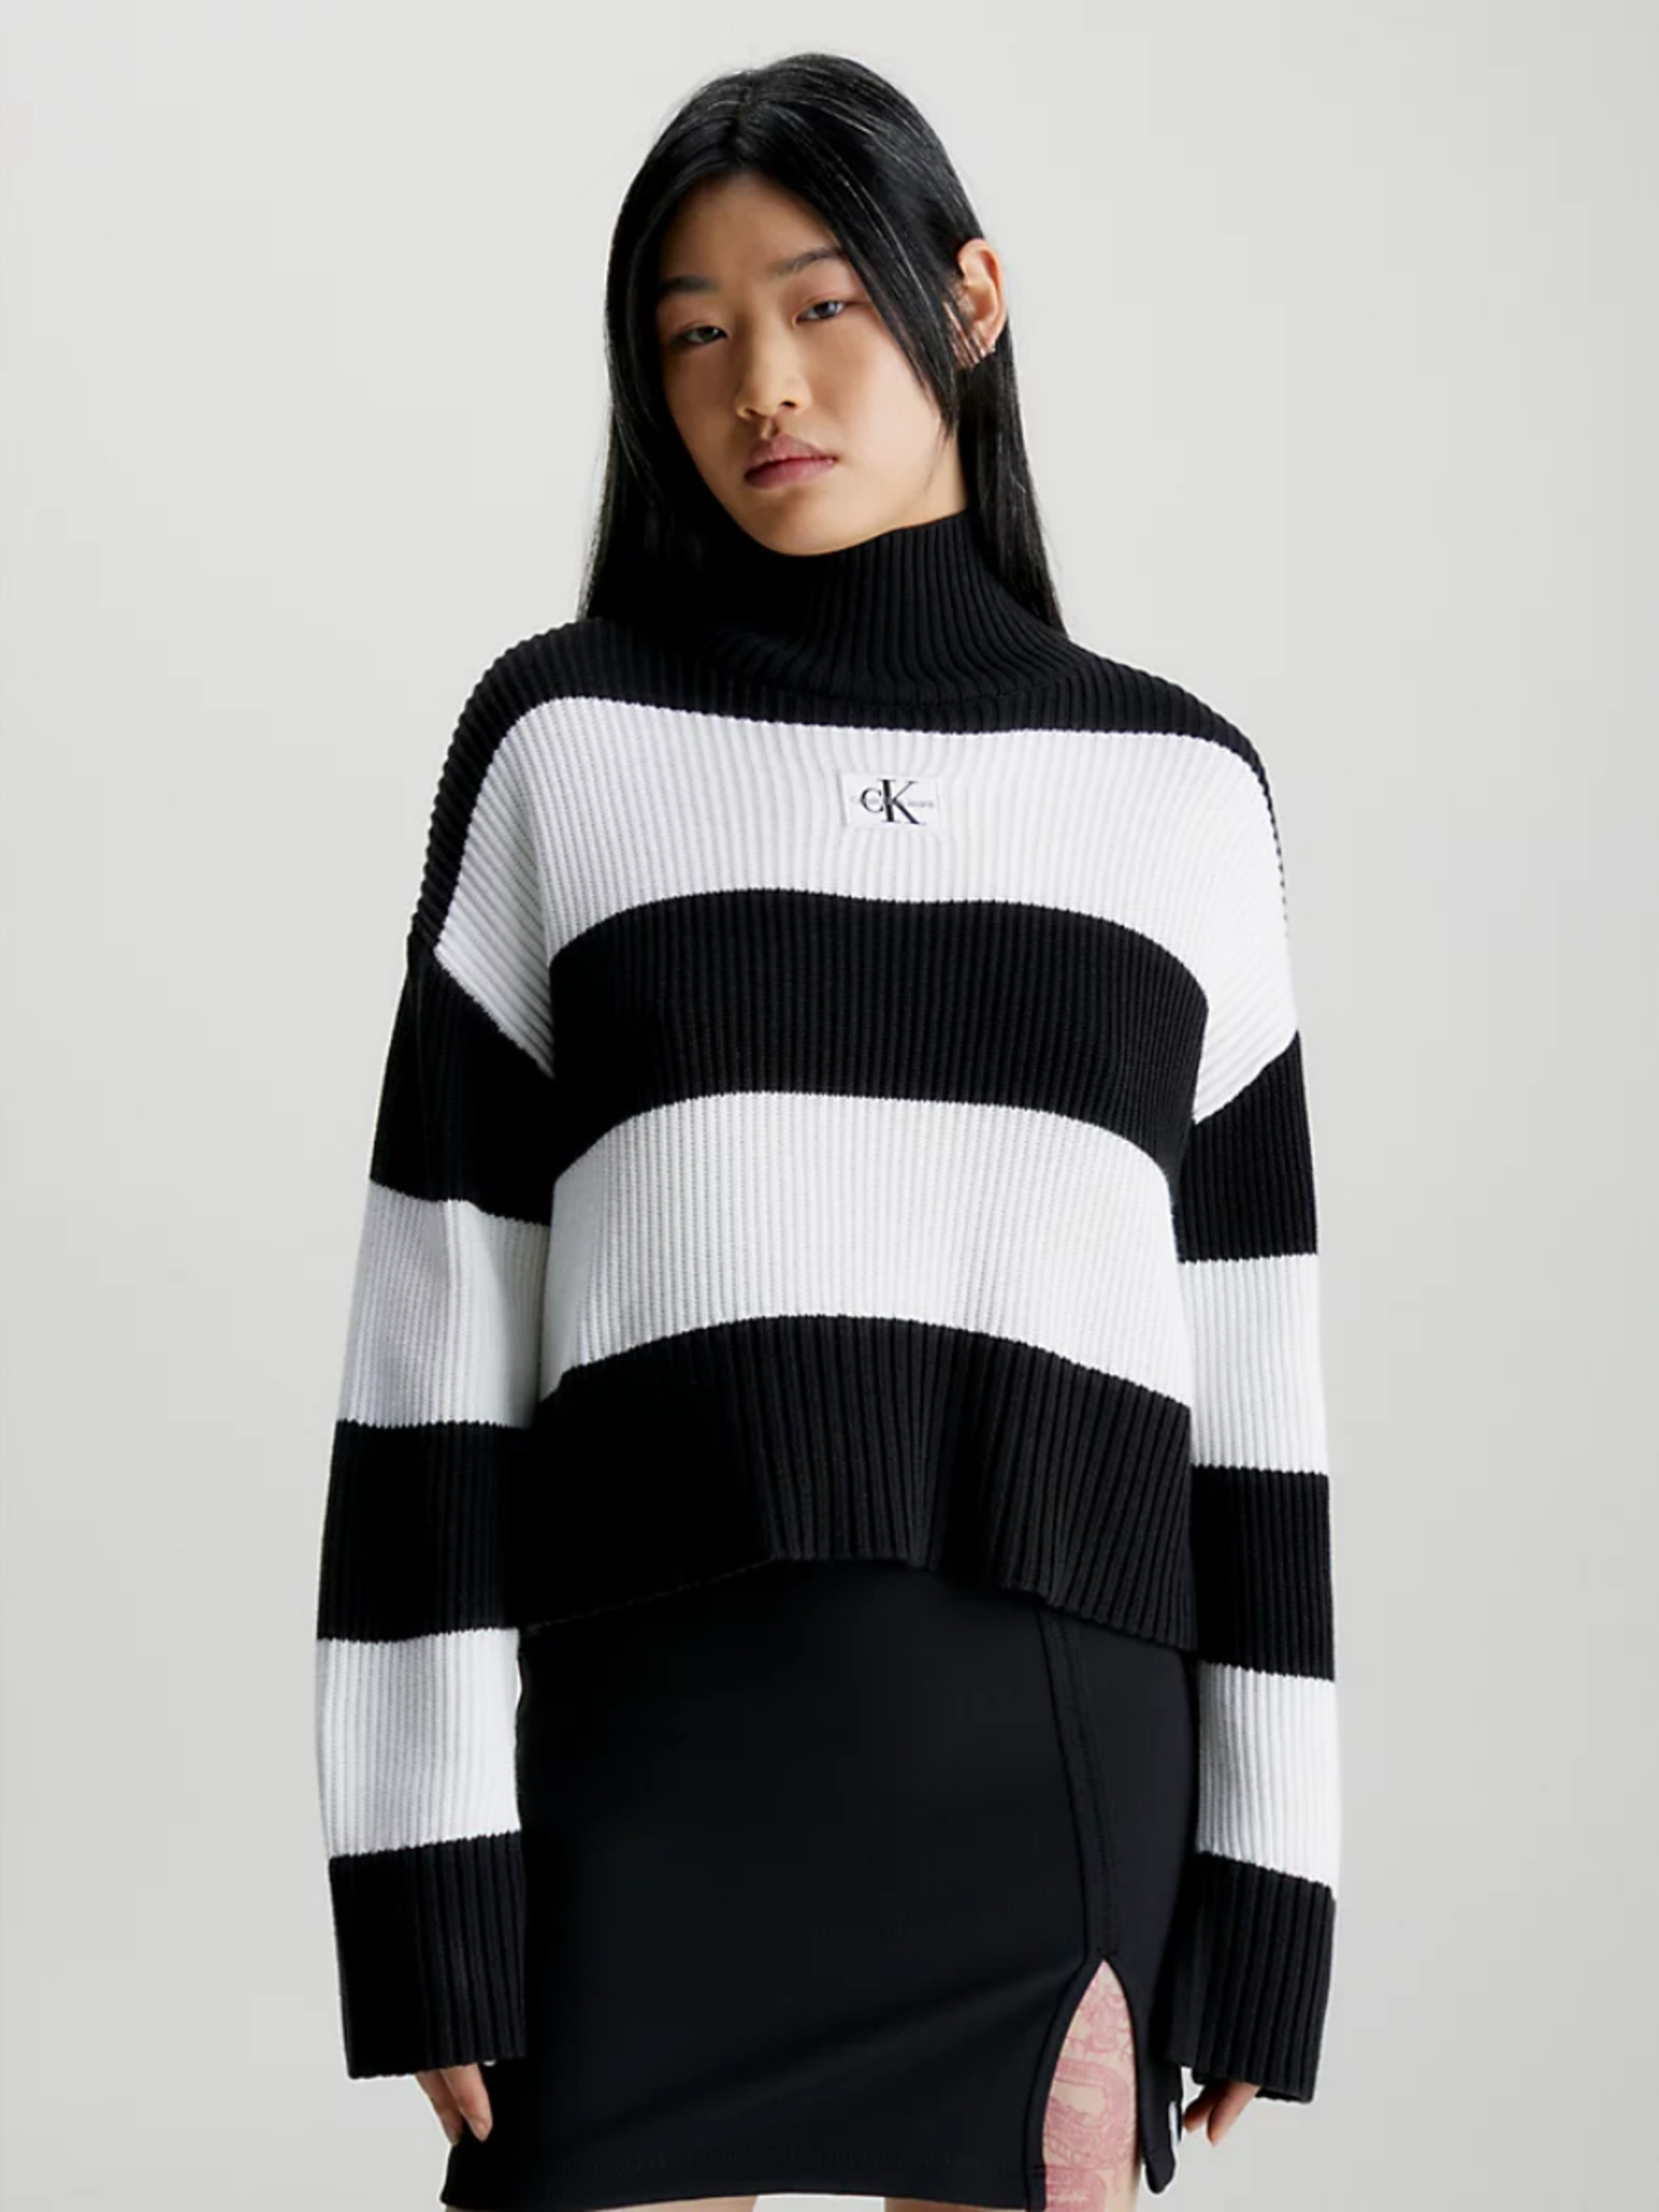 Calvin Klein dámský černobílý svetr - M (0GO)